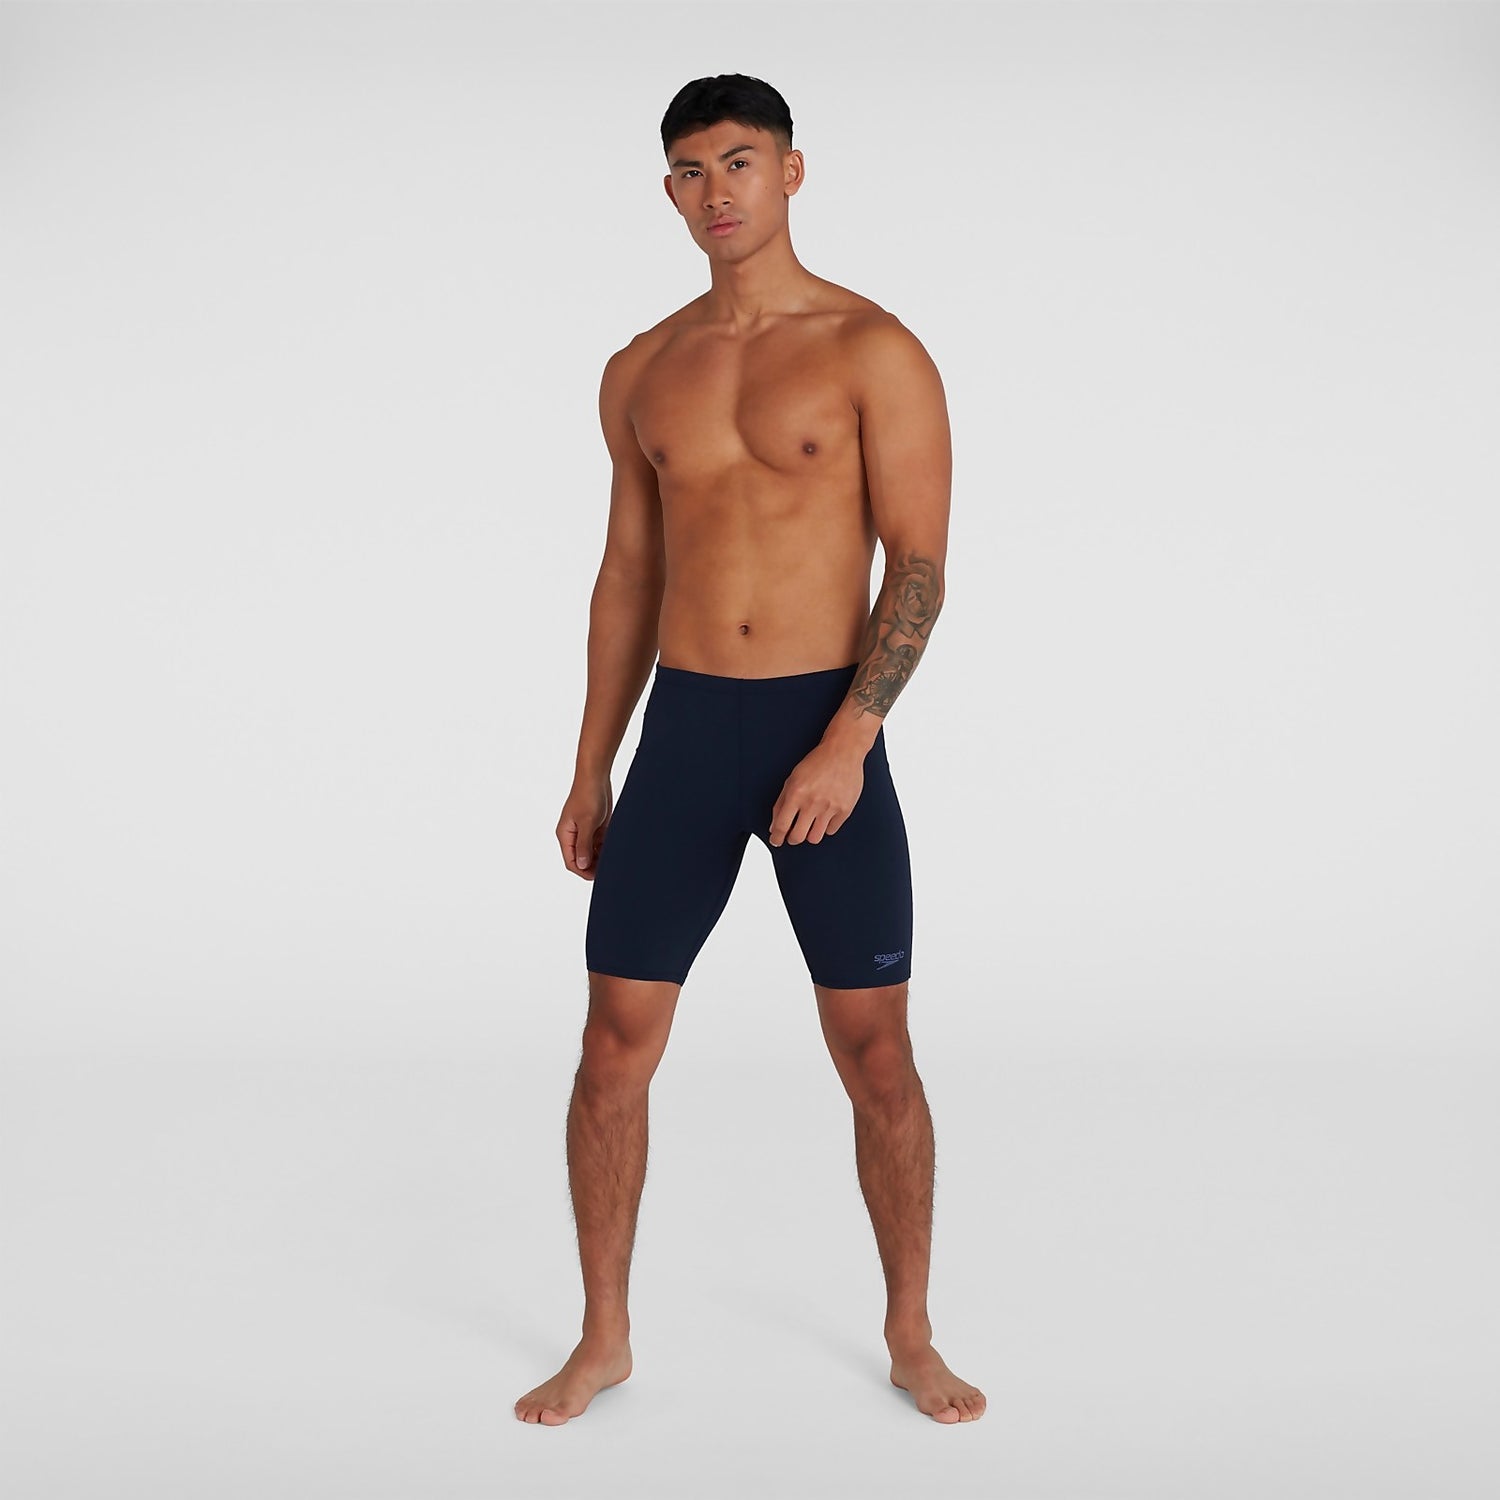 Speedo Men's Endurance Jammer Shorts in Navy with Drawstring Waist 